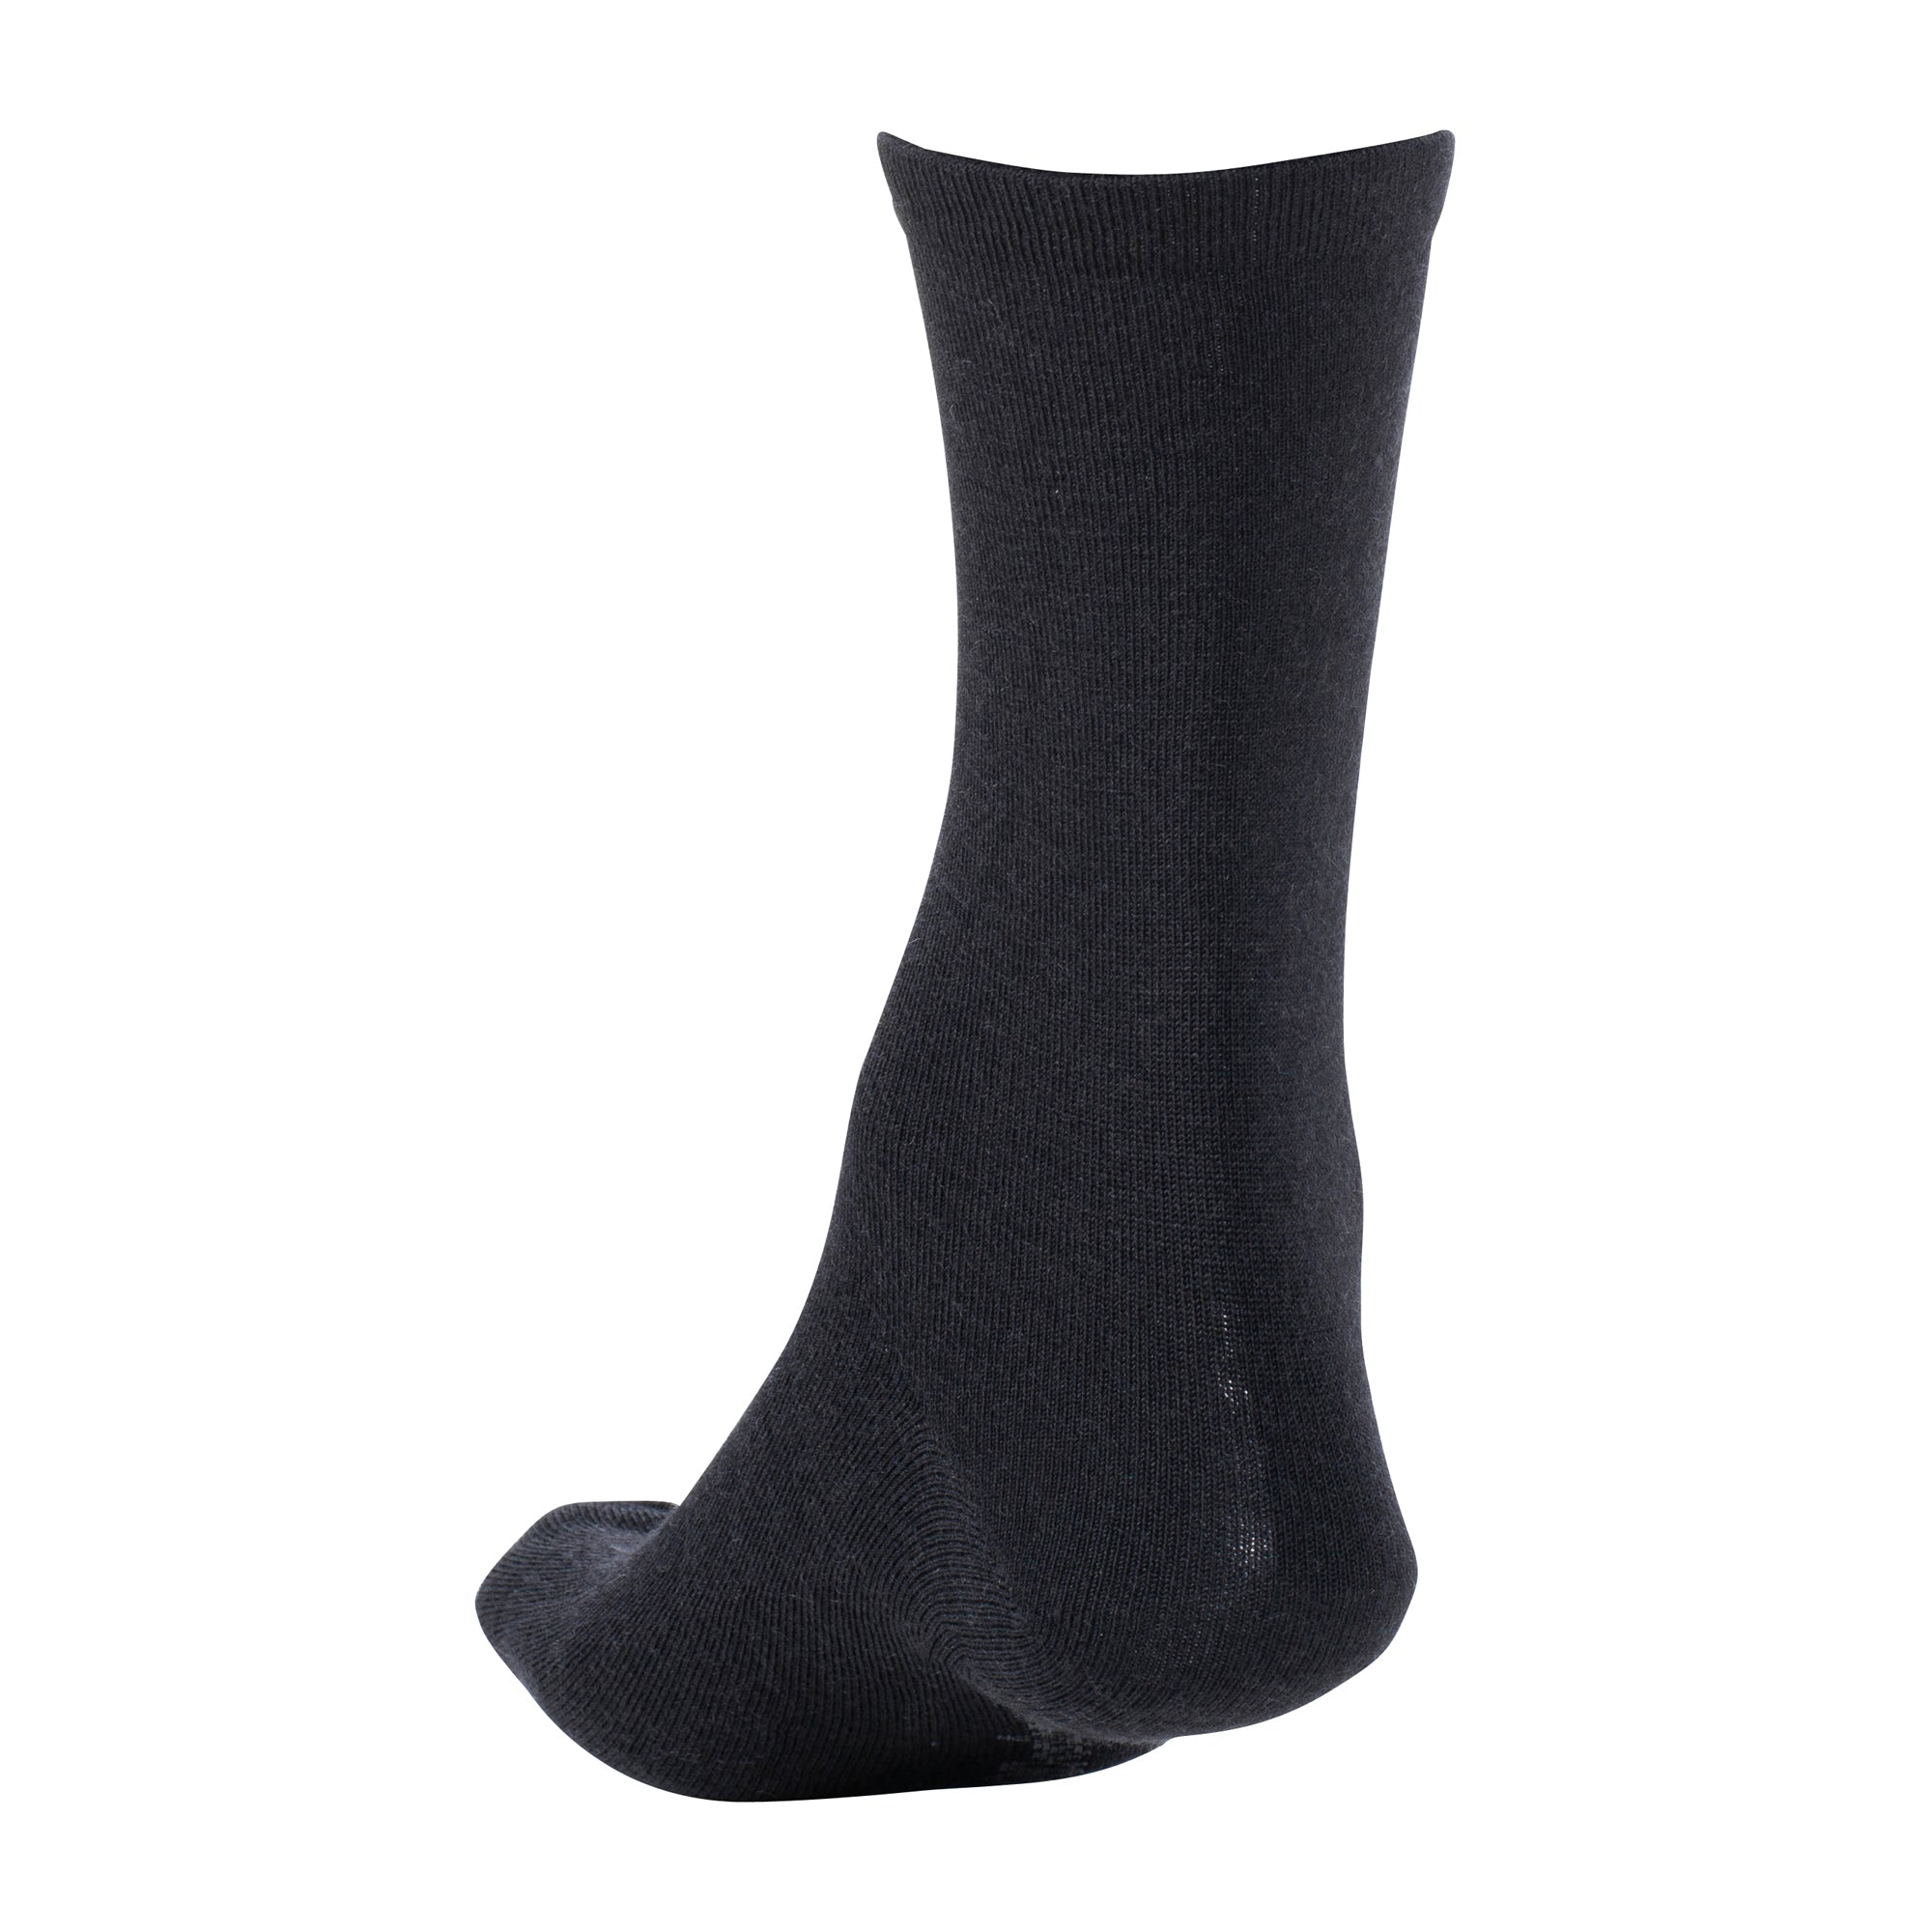 Woolpower Socken Liner Classic schwarz